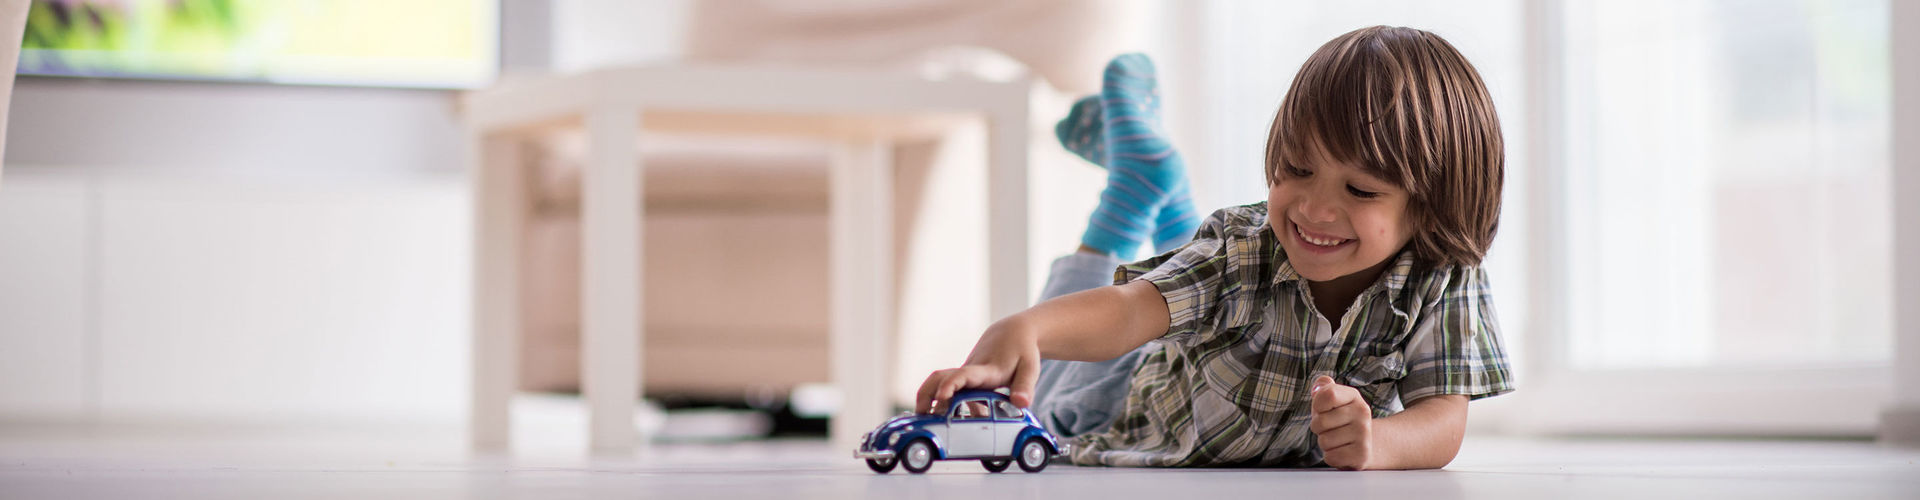 Ein kleines Kind liegt auf dem Fußboden und spielt mit einem Spielzeugauto.